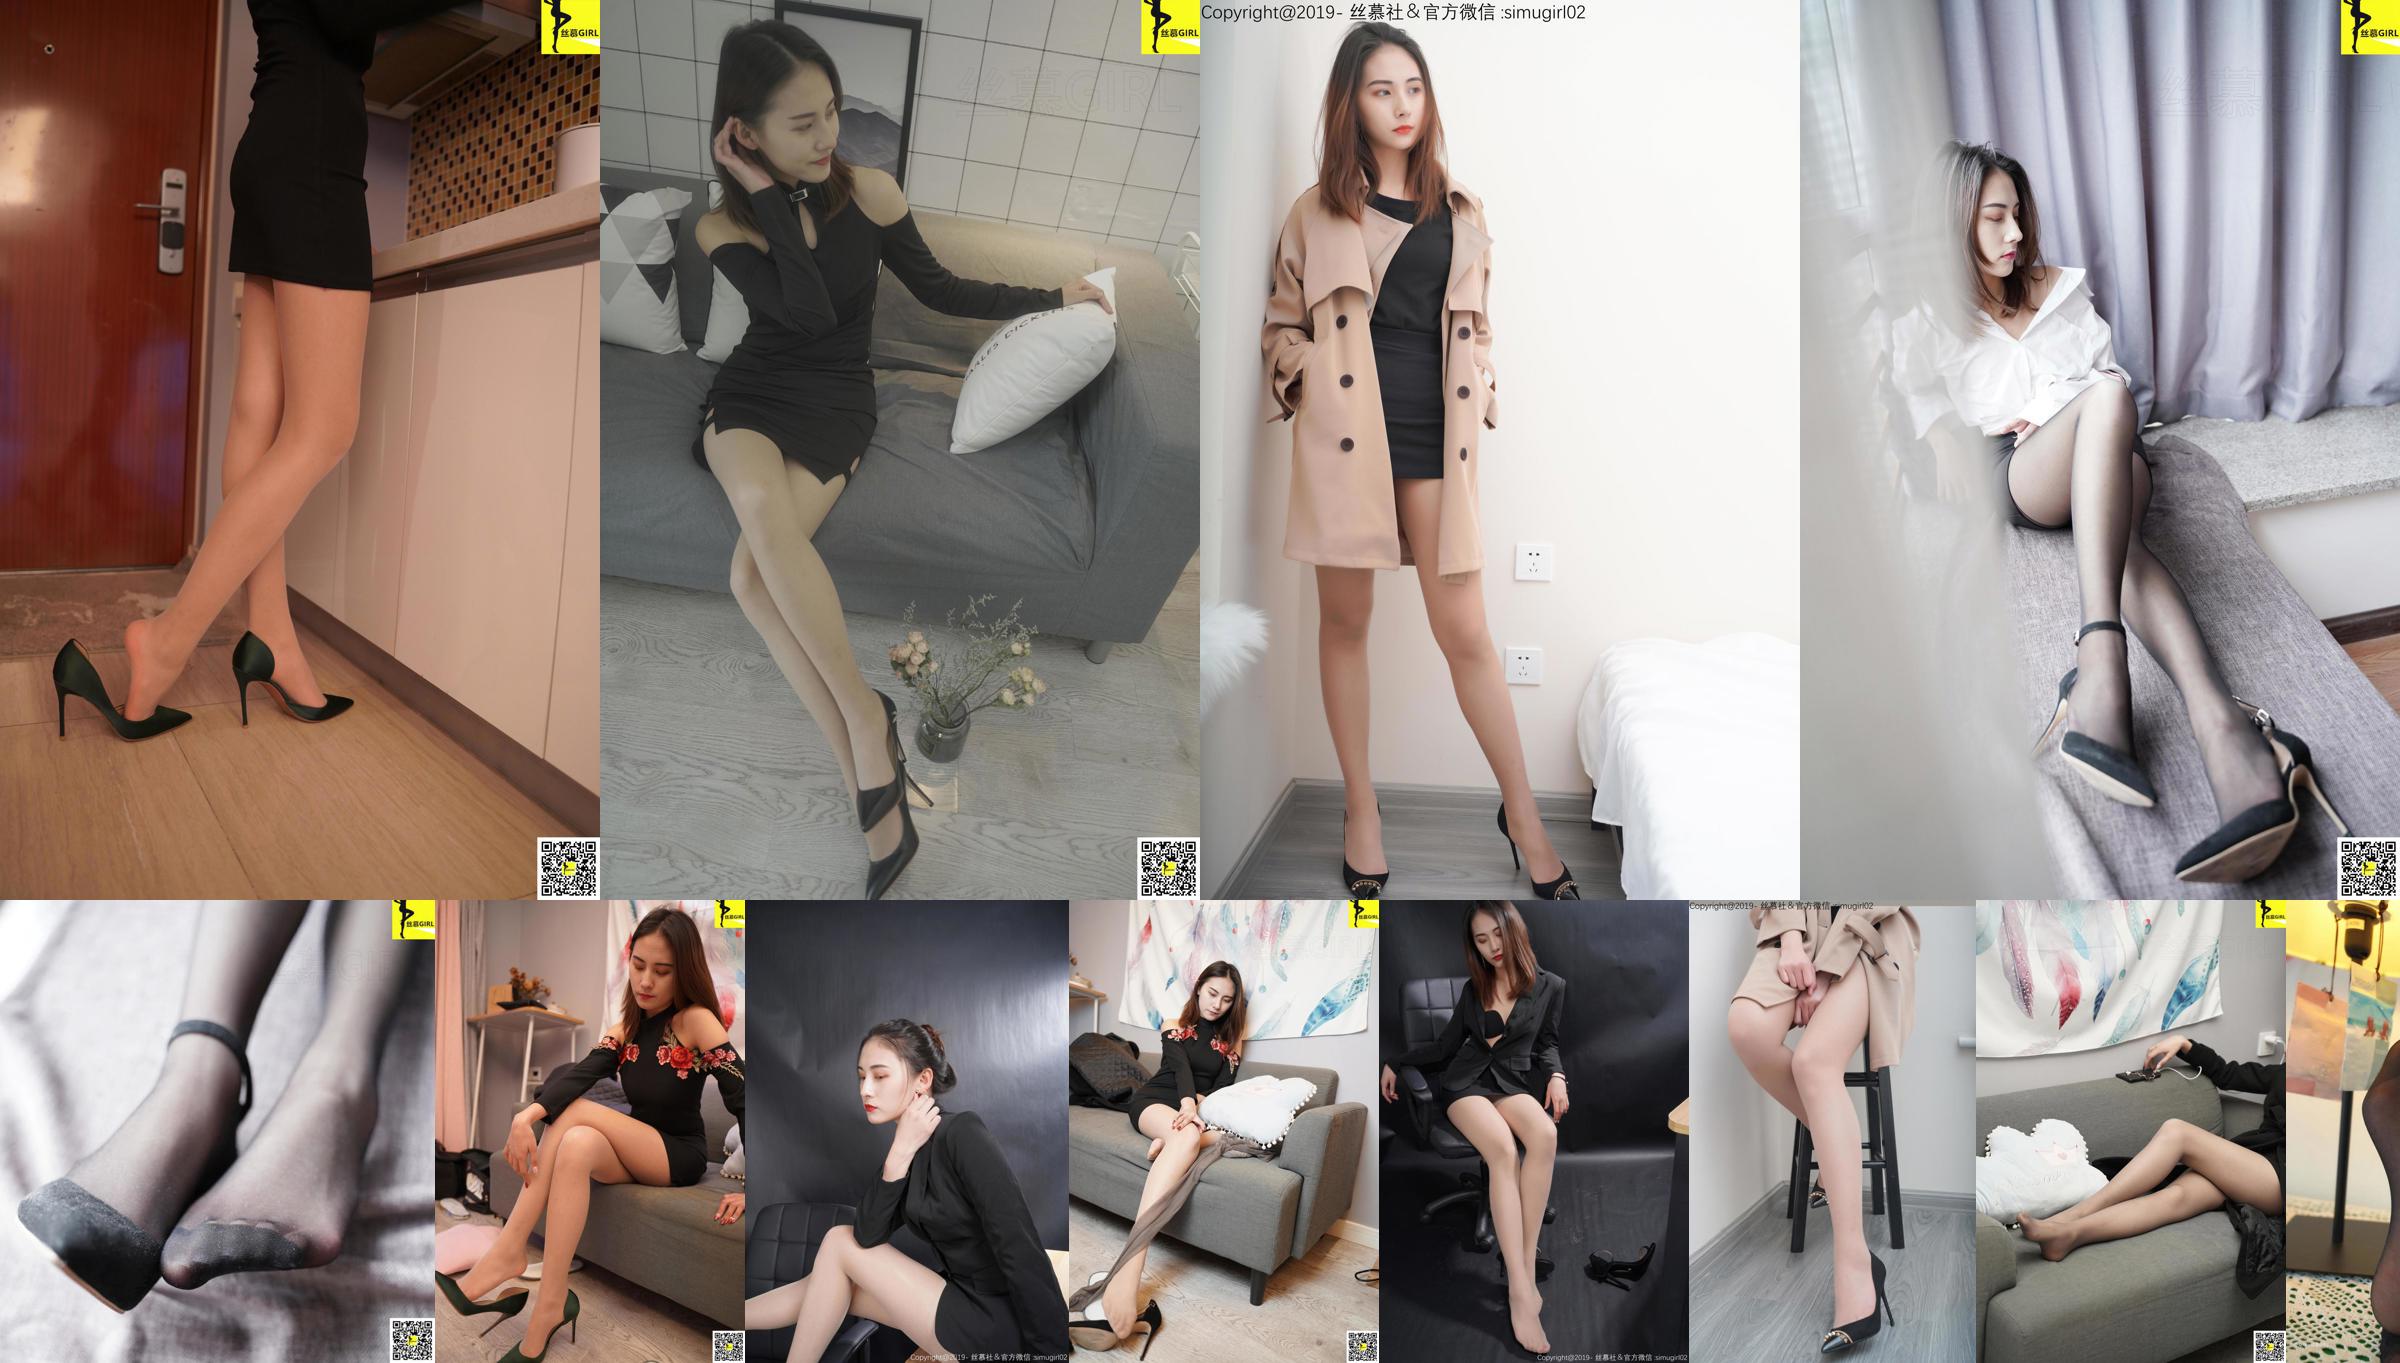 [Simu] SM006 Tingyi "Nữ Boss có đôi chân xinh đẹp" No.f10ec4 Trang 9